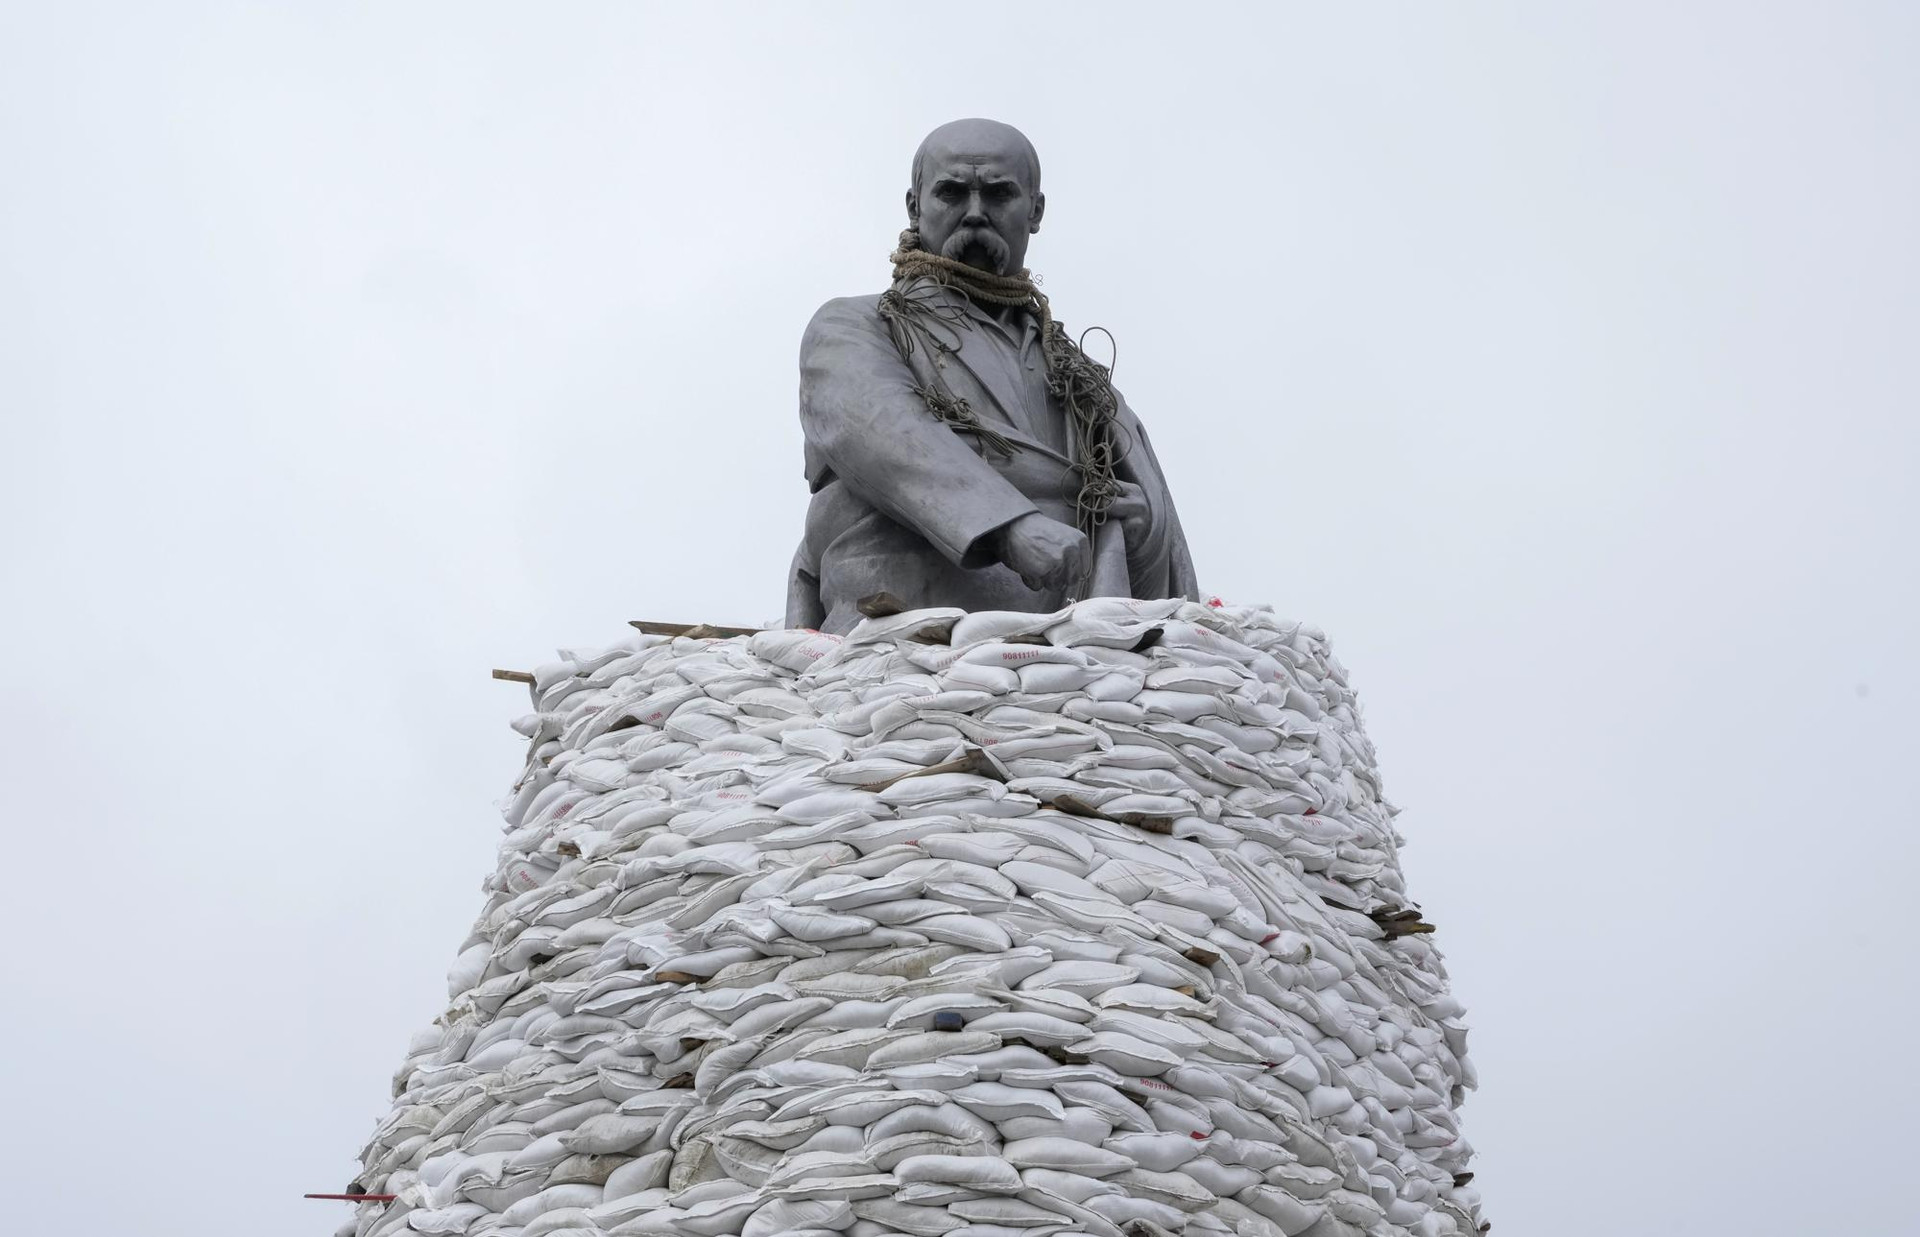 Tượng đài của Taras Shevchenko, nhà thơ Ukraine và là biểu tượng quốc gia, được bao phủ bởi những chiếc túi bảo vệ ở Kharkiv, Ukraine. Ảnh: AP.